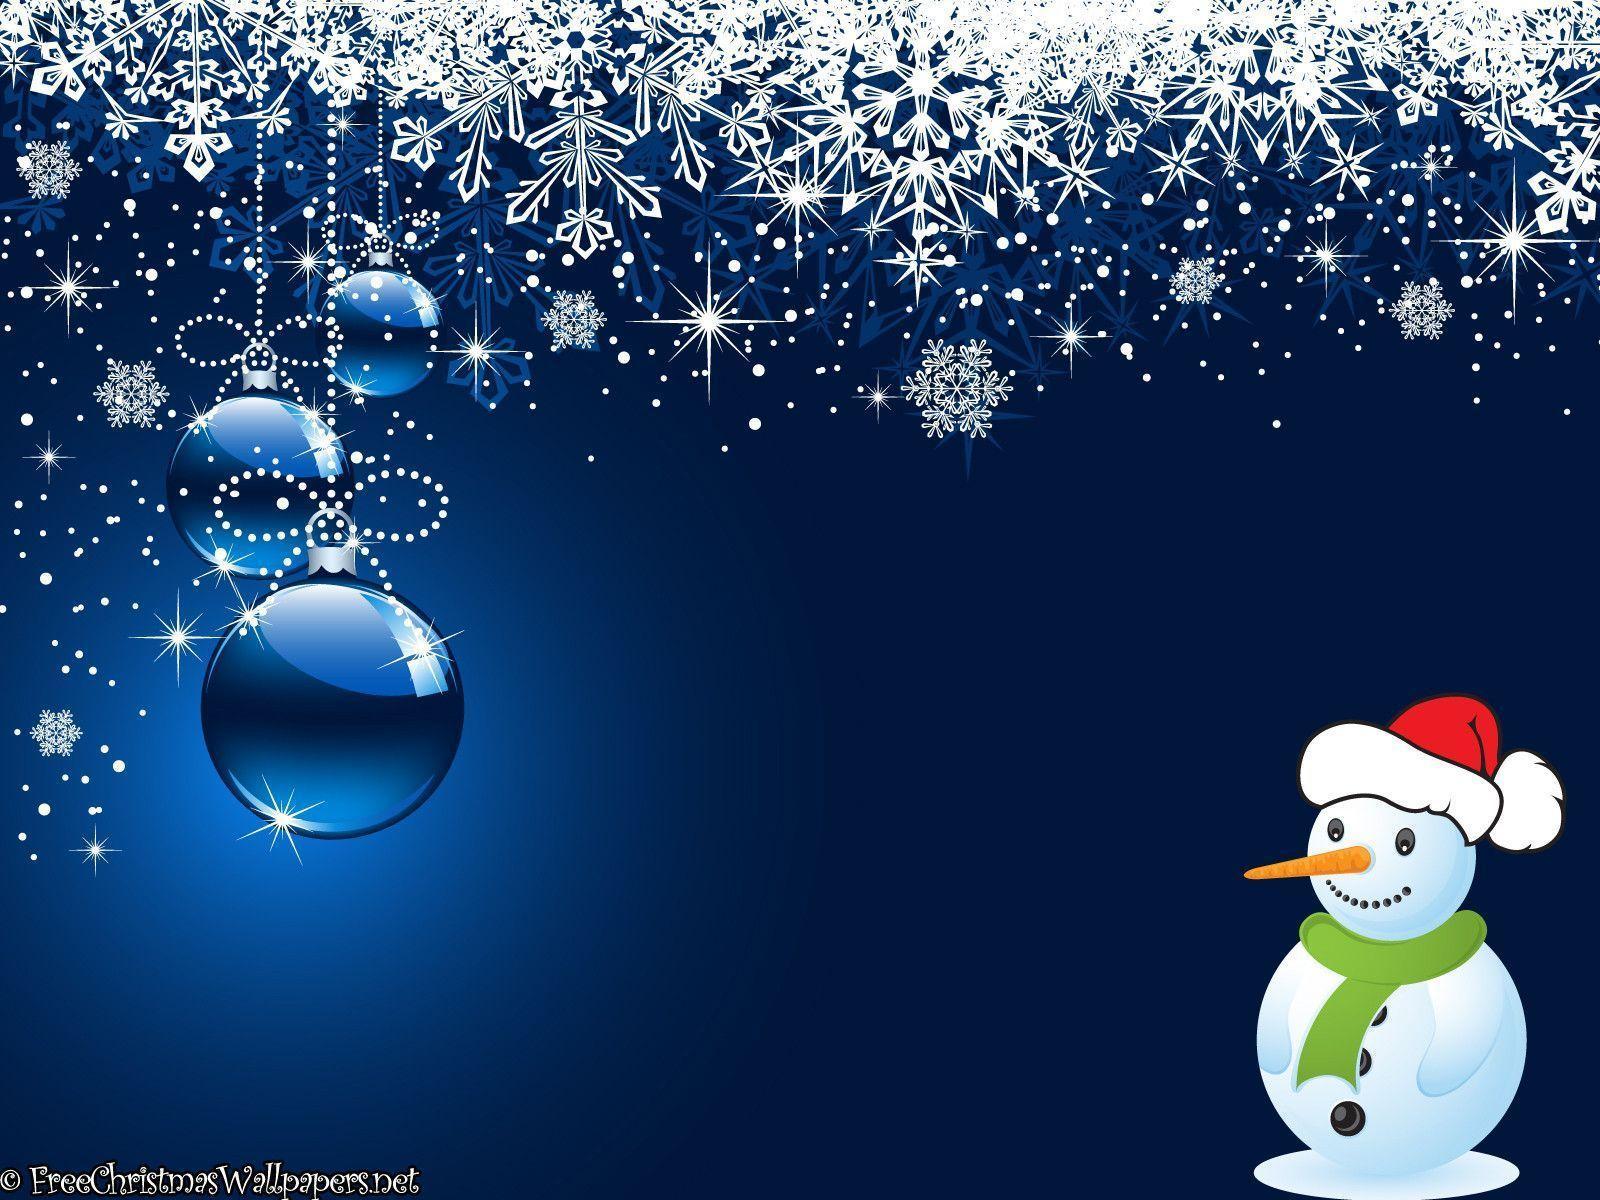 Snowman and Ornaments Wallpaper